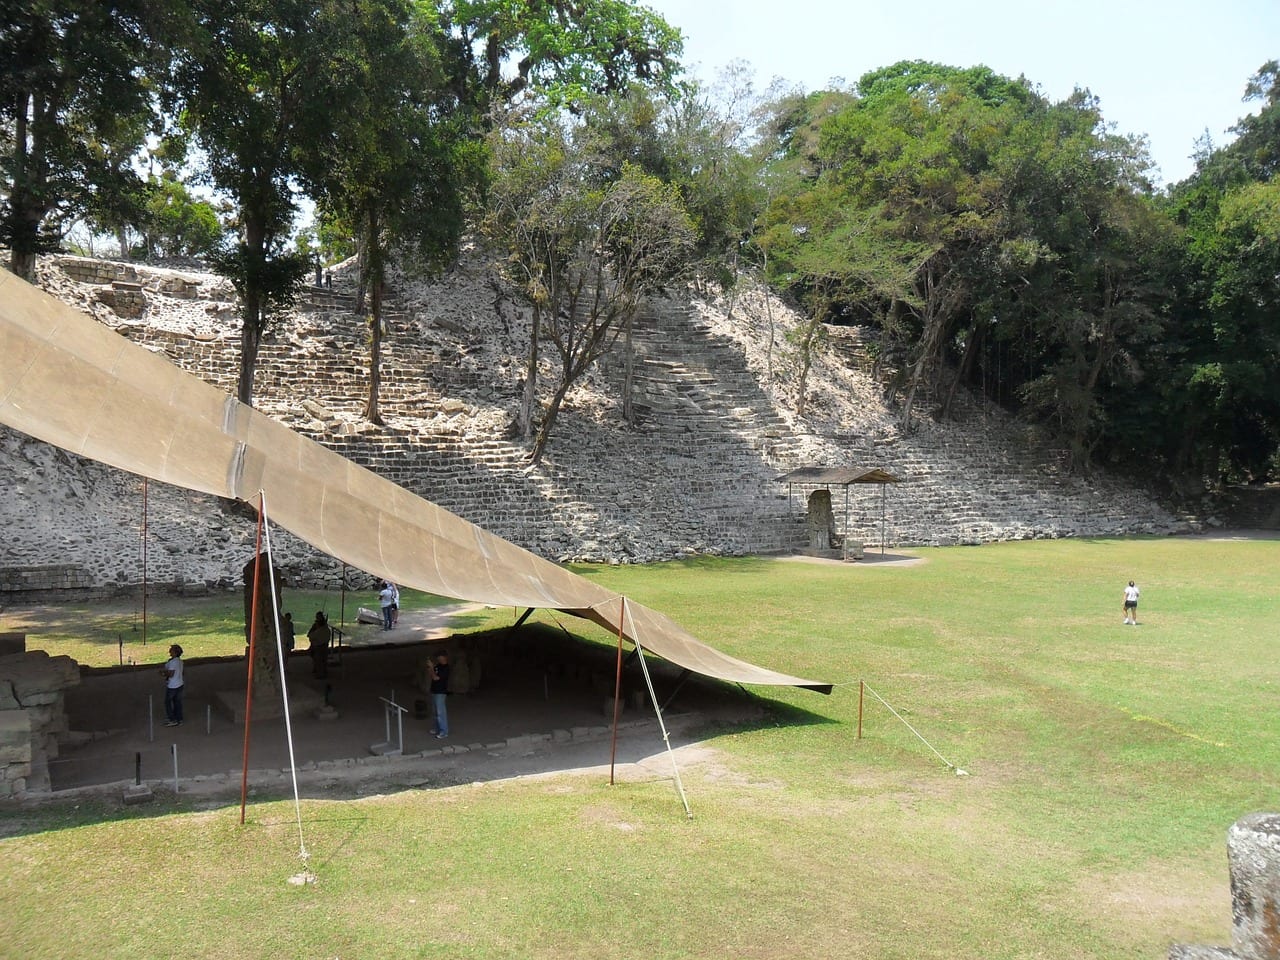 Copan Ruinas in Honduras